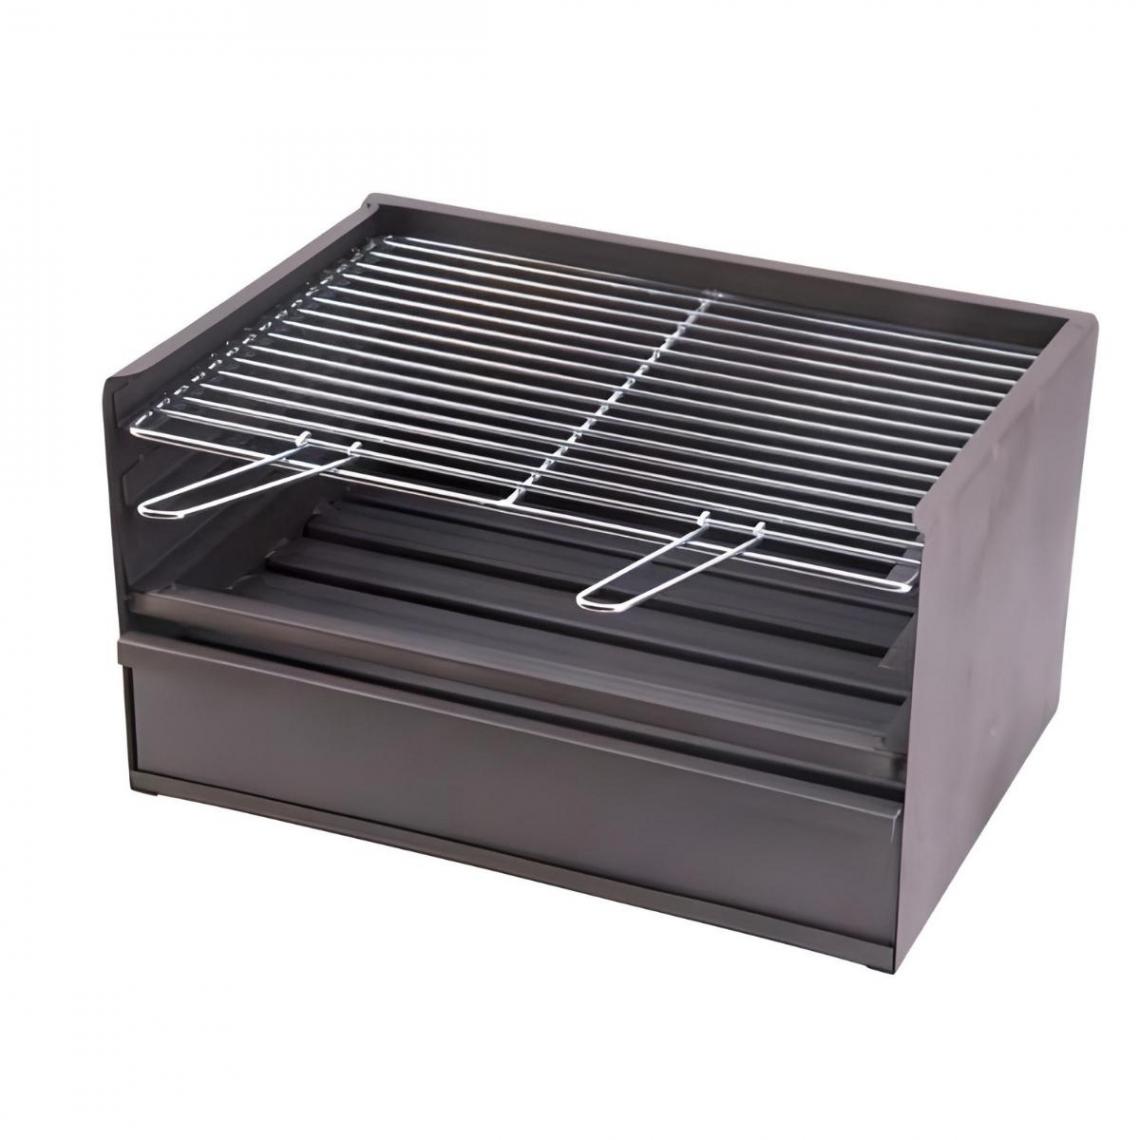 Visiodirect - Tiroir Barbecue 3 hauteur avec grille galvanisée en Acier Inoxydable coloris Gris - 80 x 41 x 36 cm - Accessoires barbecue